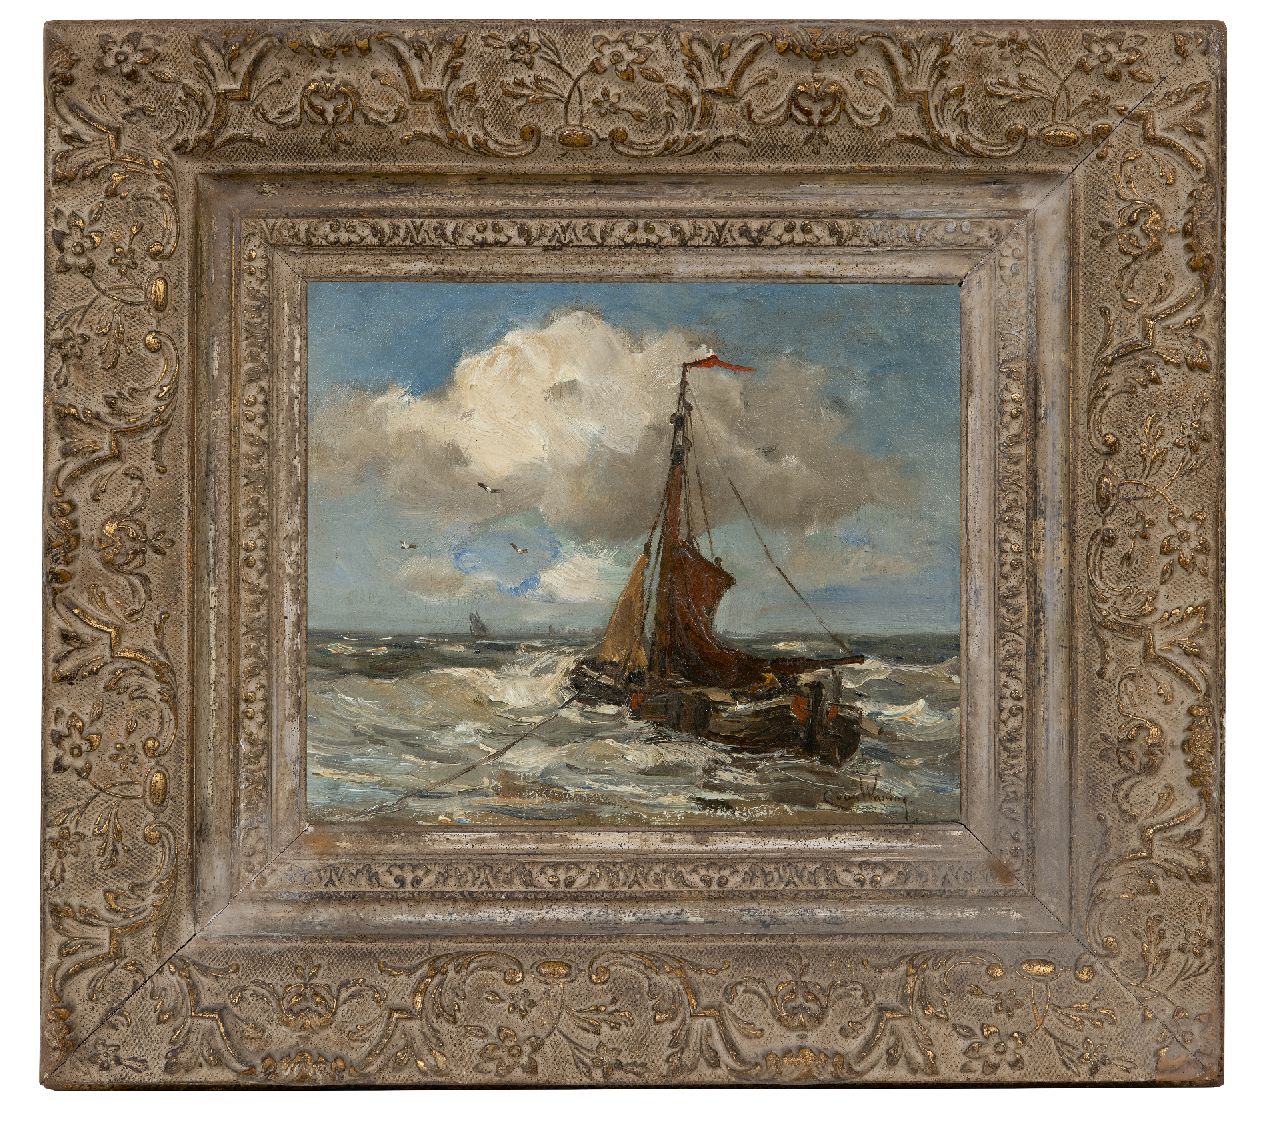 Waning C.A. van | Cornelis Anthonij 'Kees' van Waning | Schilderijen te koop aangeboden | Bomschuit voor anker in de branding, olieverf op doek 25,2 x 31,0 cm, gesigneerd rechtsonder